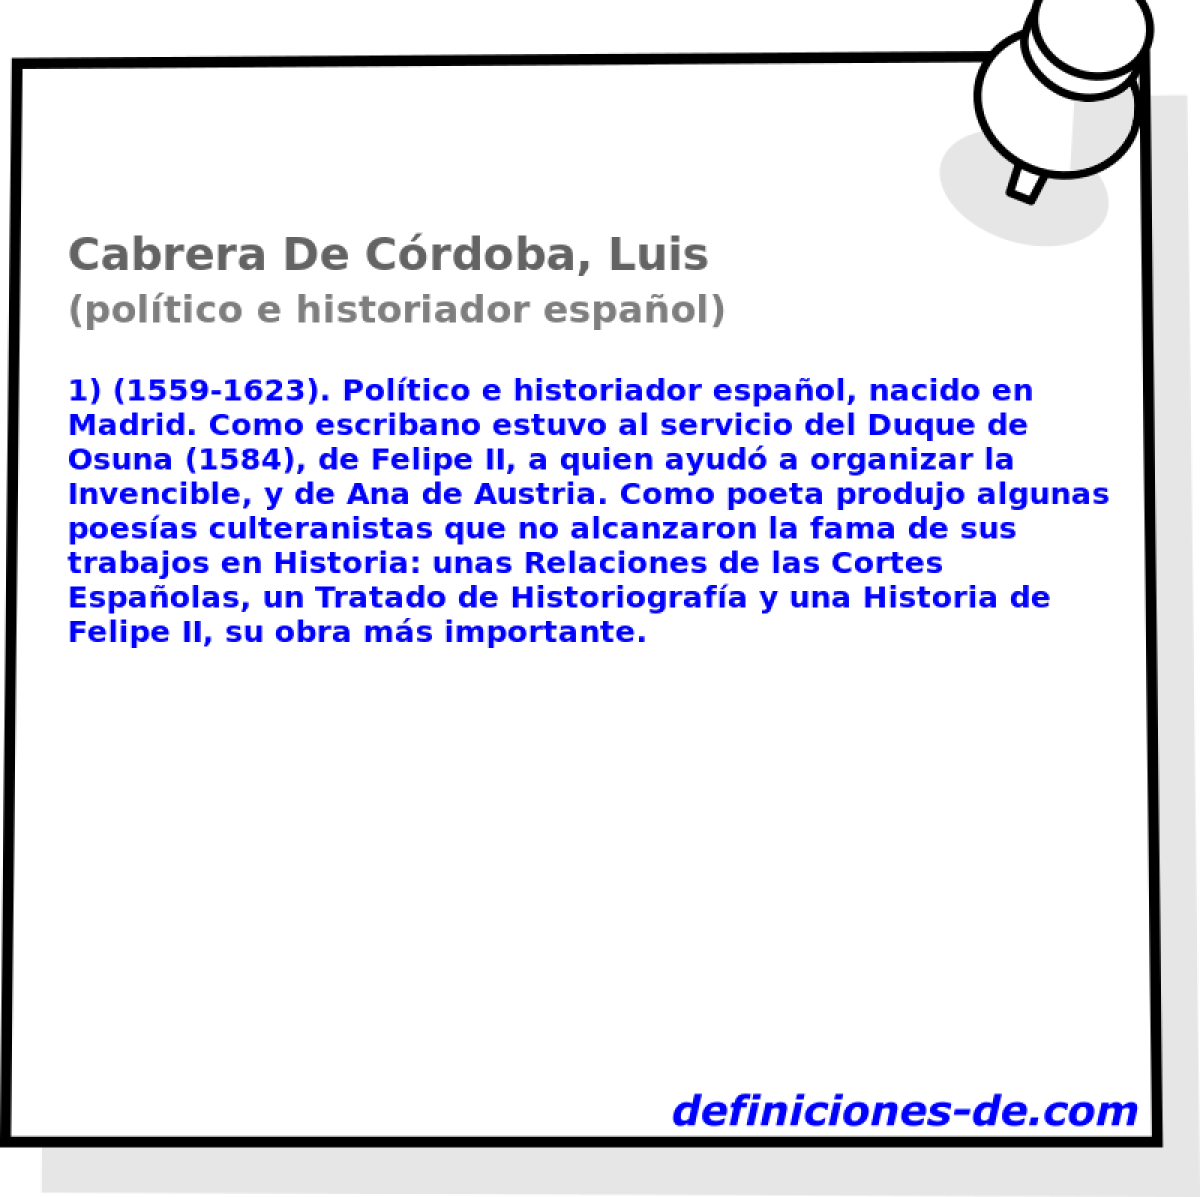 Cabrera De Crdoba, Luis (poltico e historiador espaol)